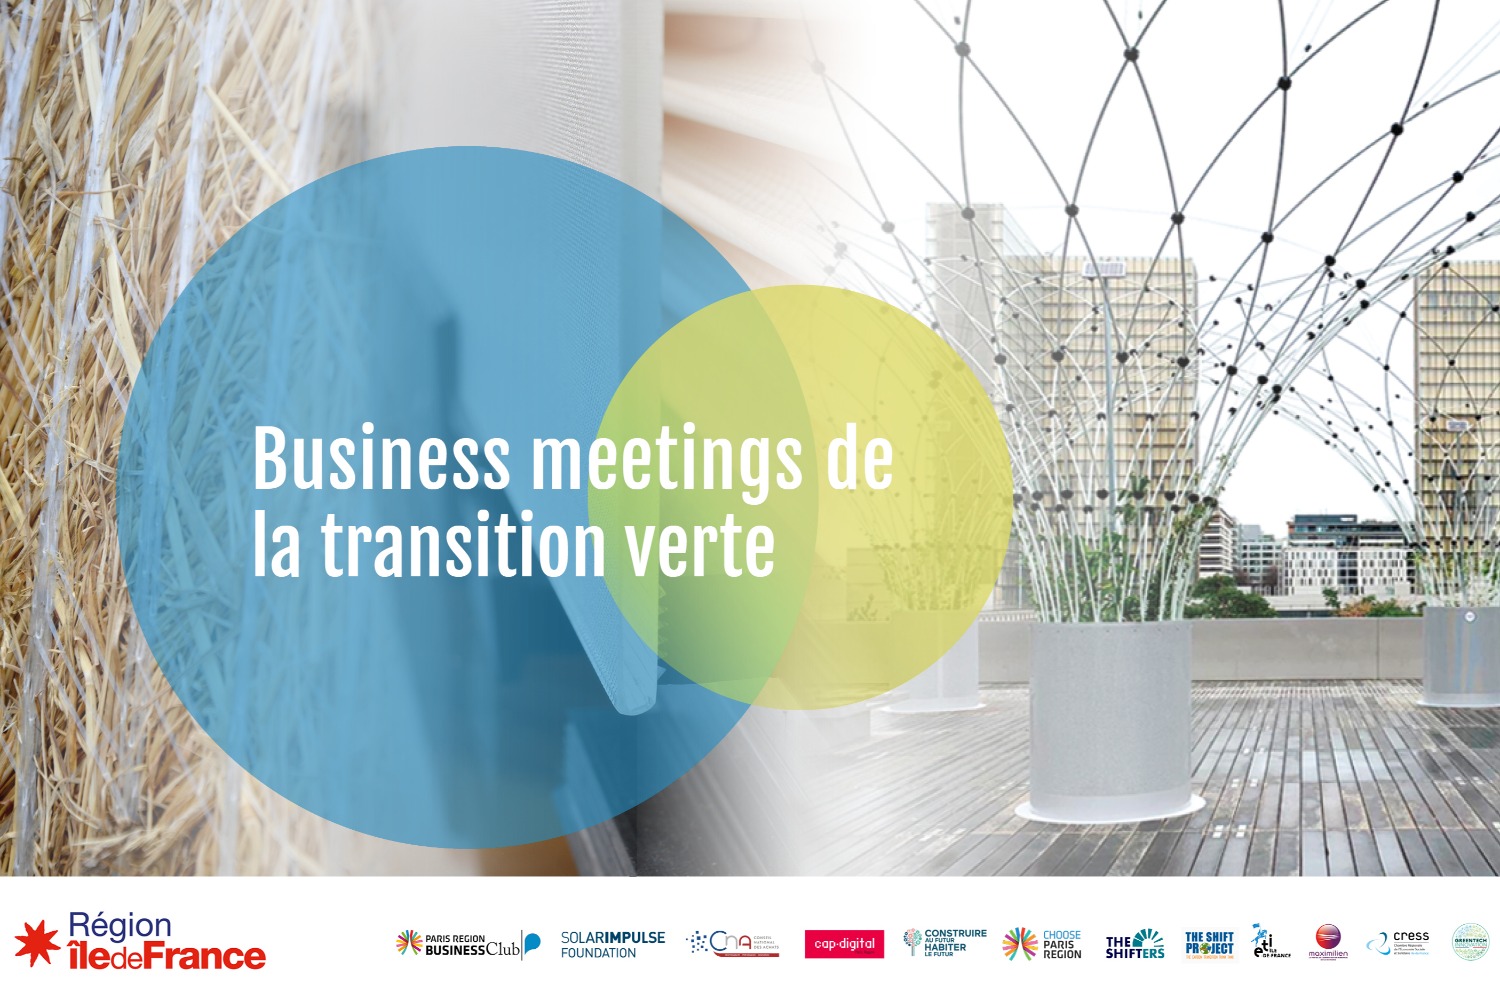 Business meetings de la Transition verte